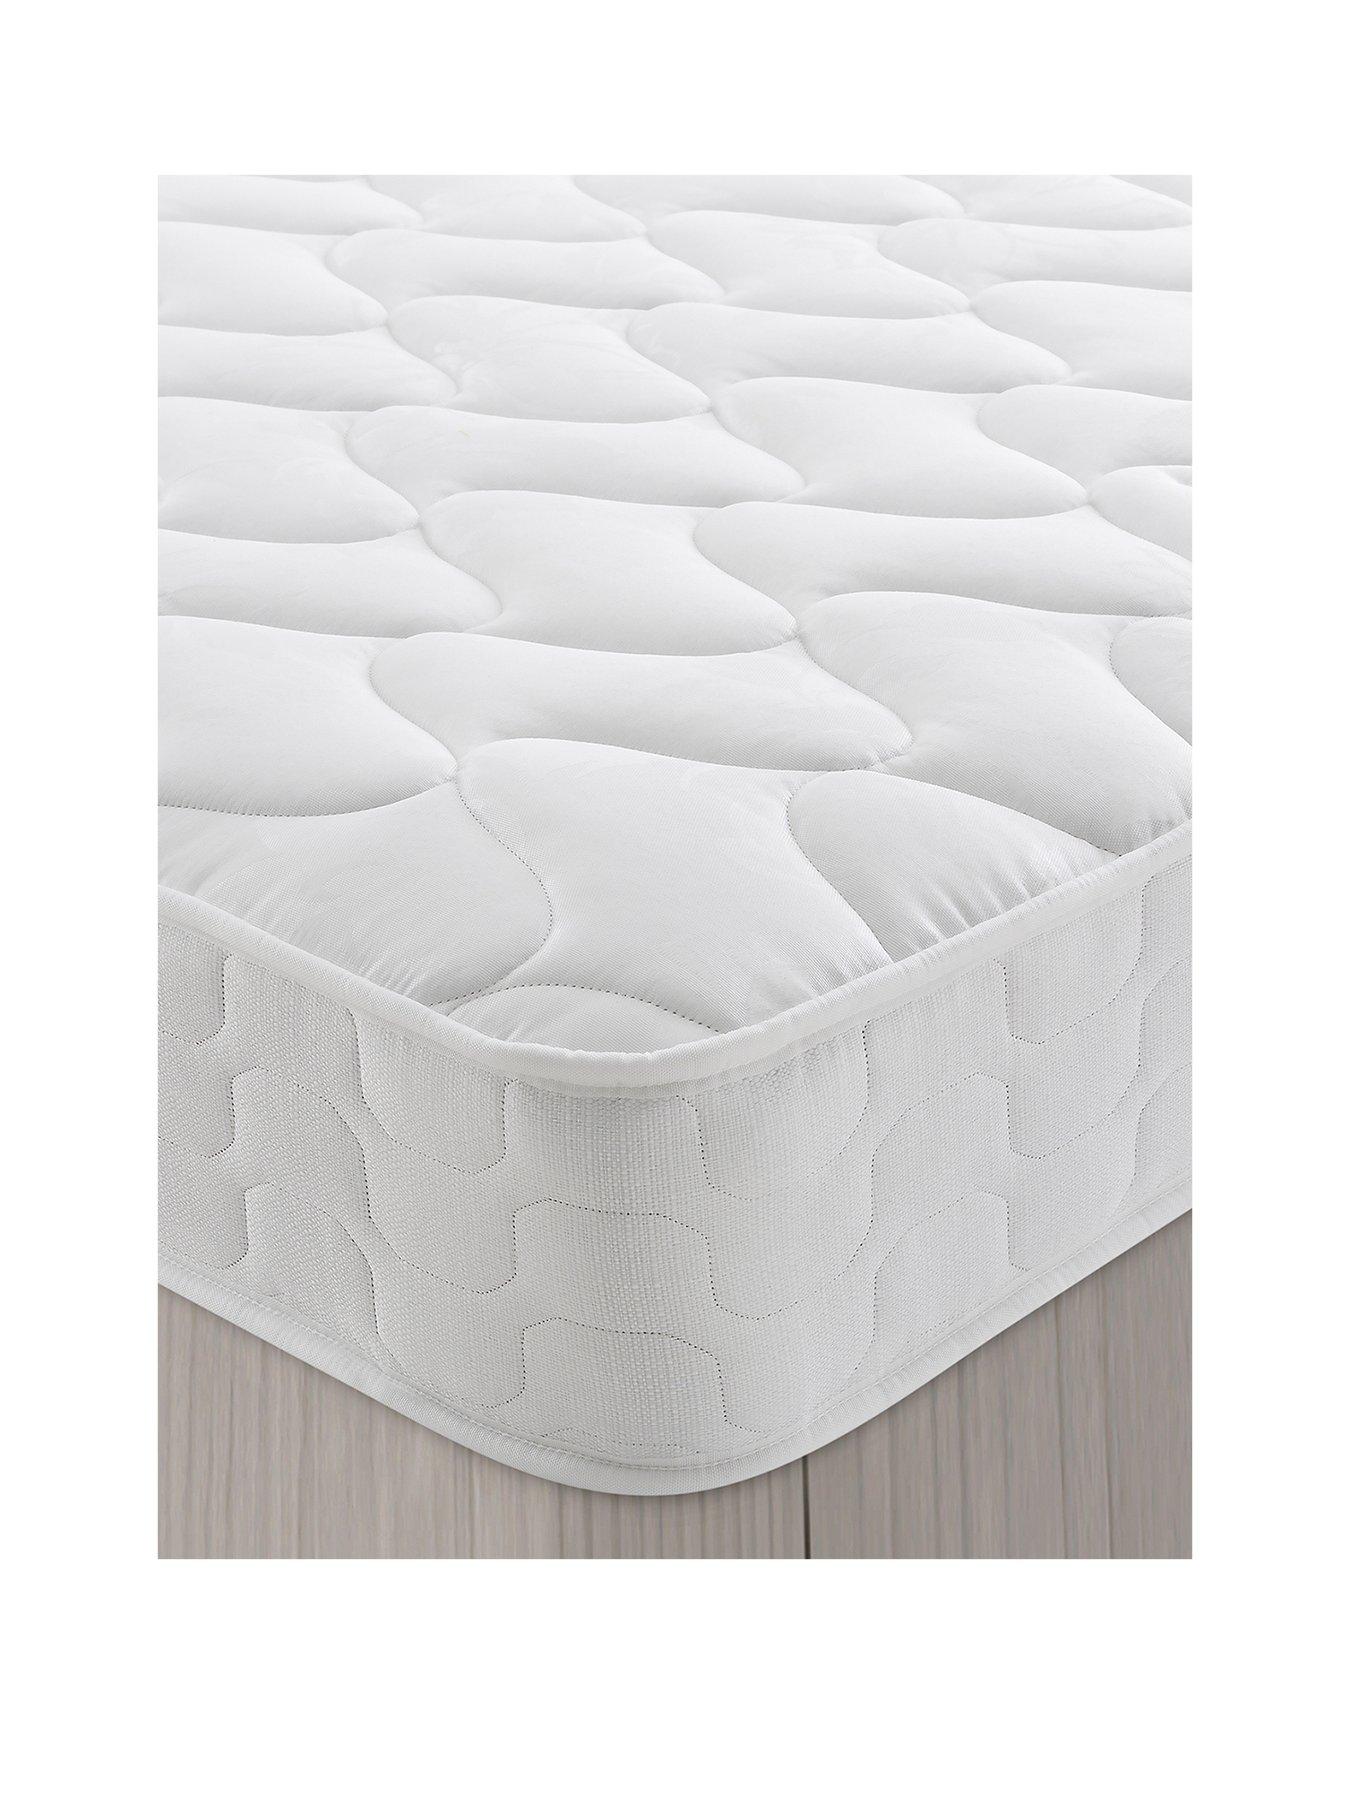 crib mattress 85 x 45